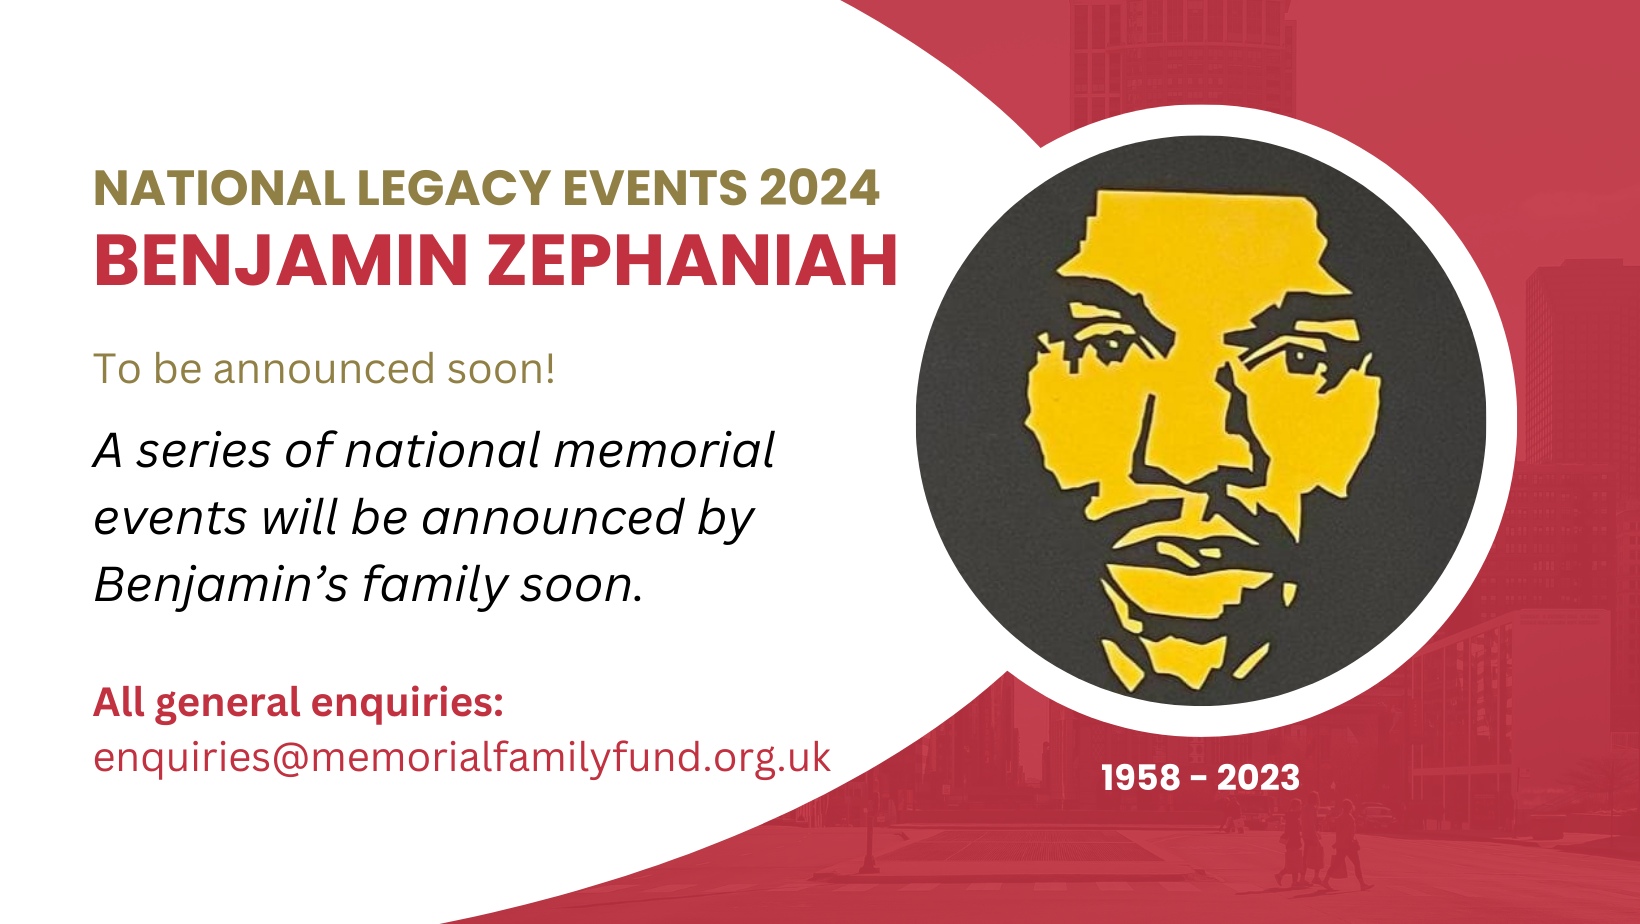 Benjamin Zephaniah Events 2024